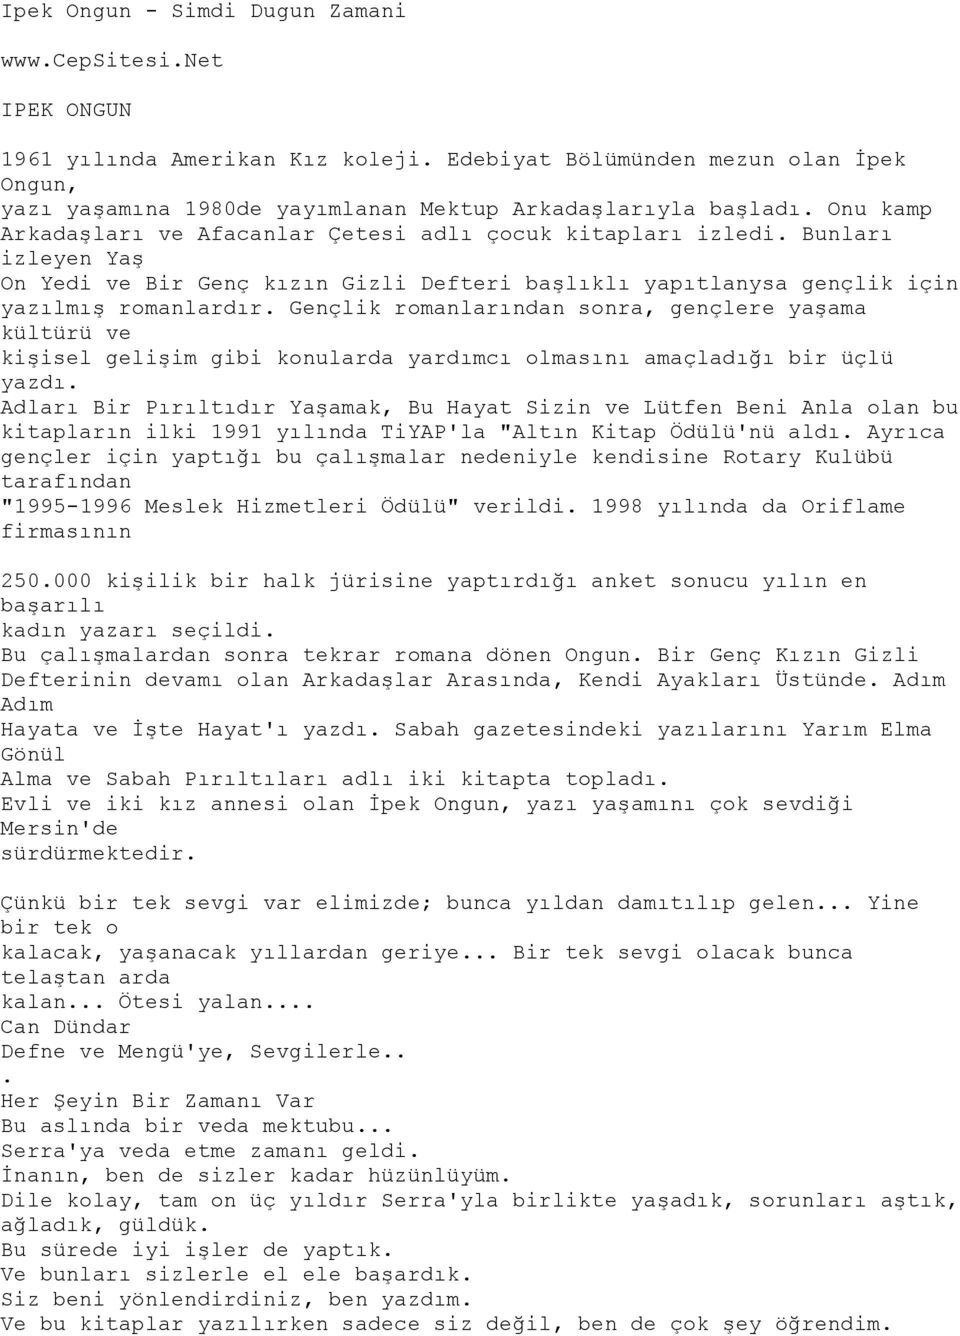 Ipek Ongun - Simdi Dugun Zamani. IPEK ONGUN - PDF Ücretsiz indirin